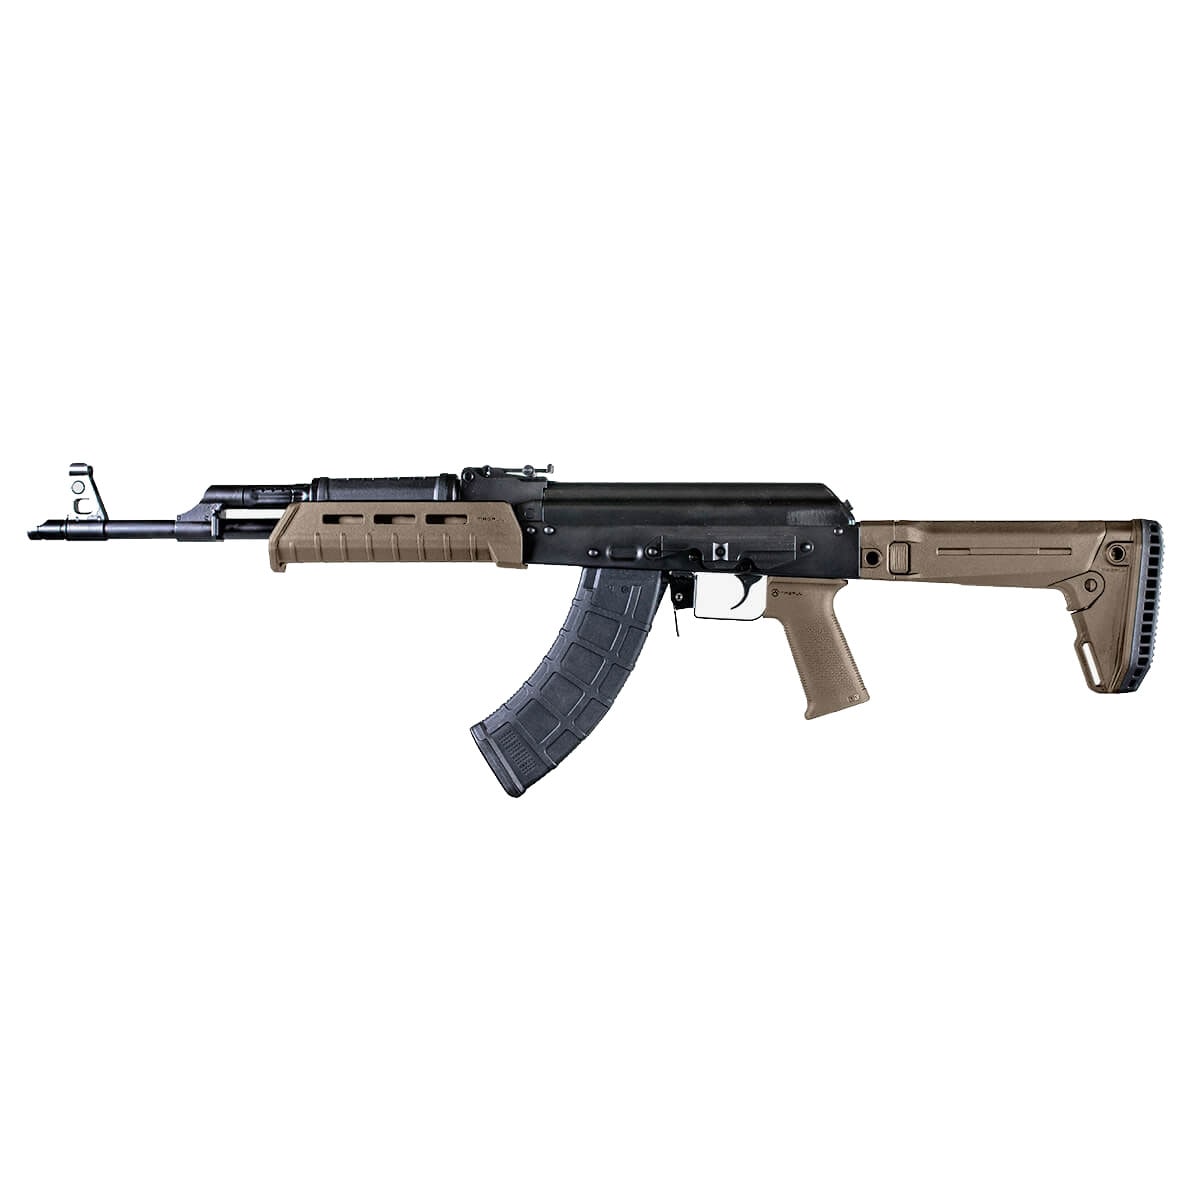 Chwyt pistoletowy Magpul MOE SL Grip do karabinków AK47/AK74 - Flat Dark Earth 